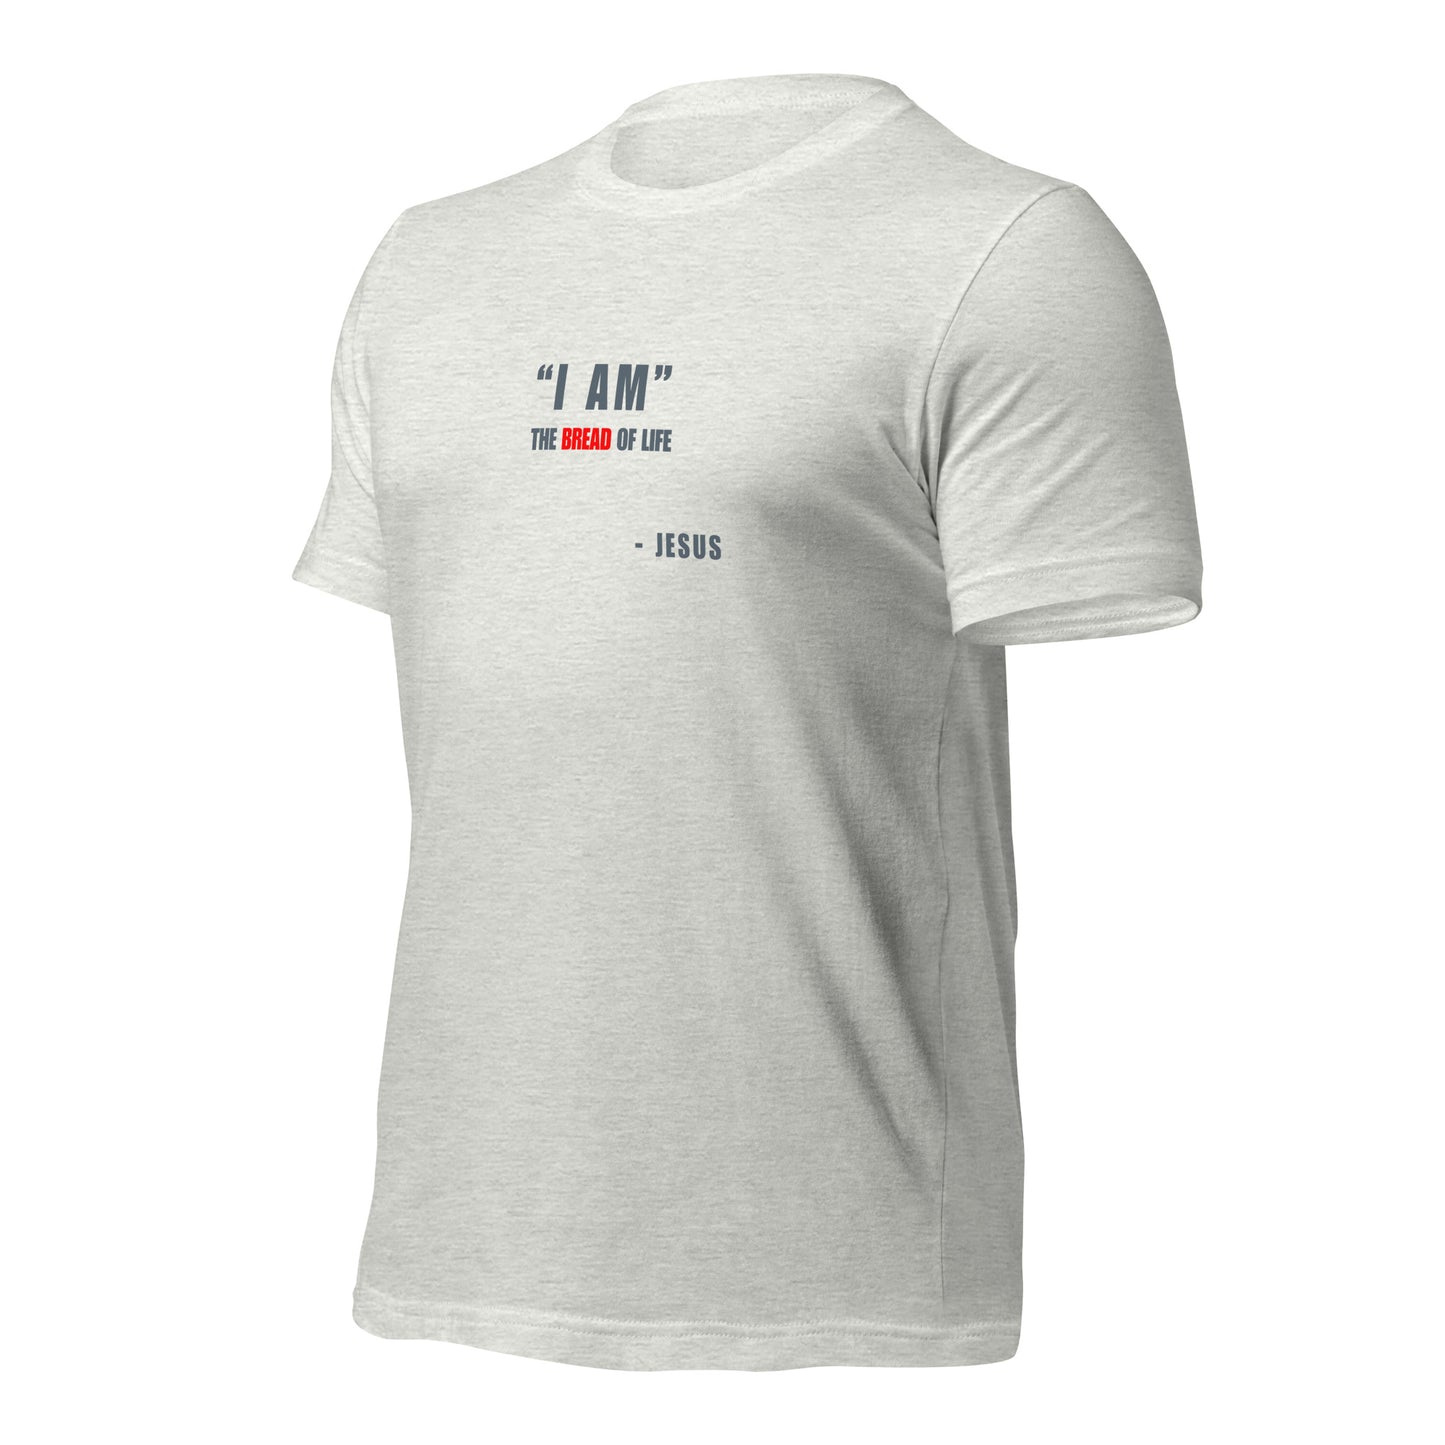 "I AM" Unisex T-shirt